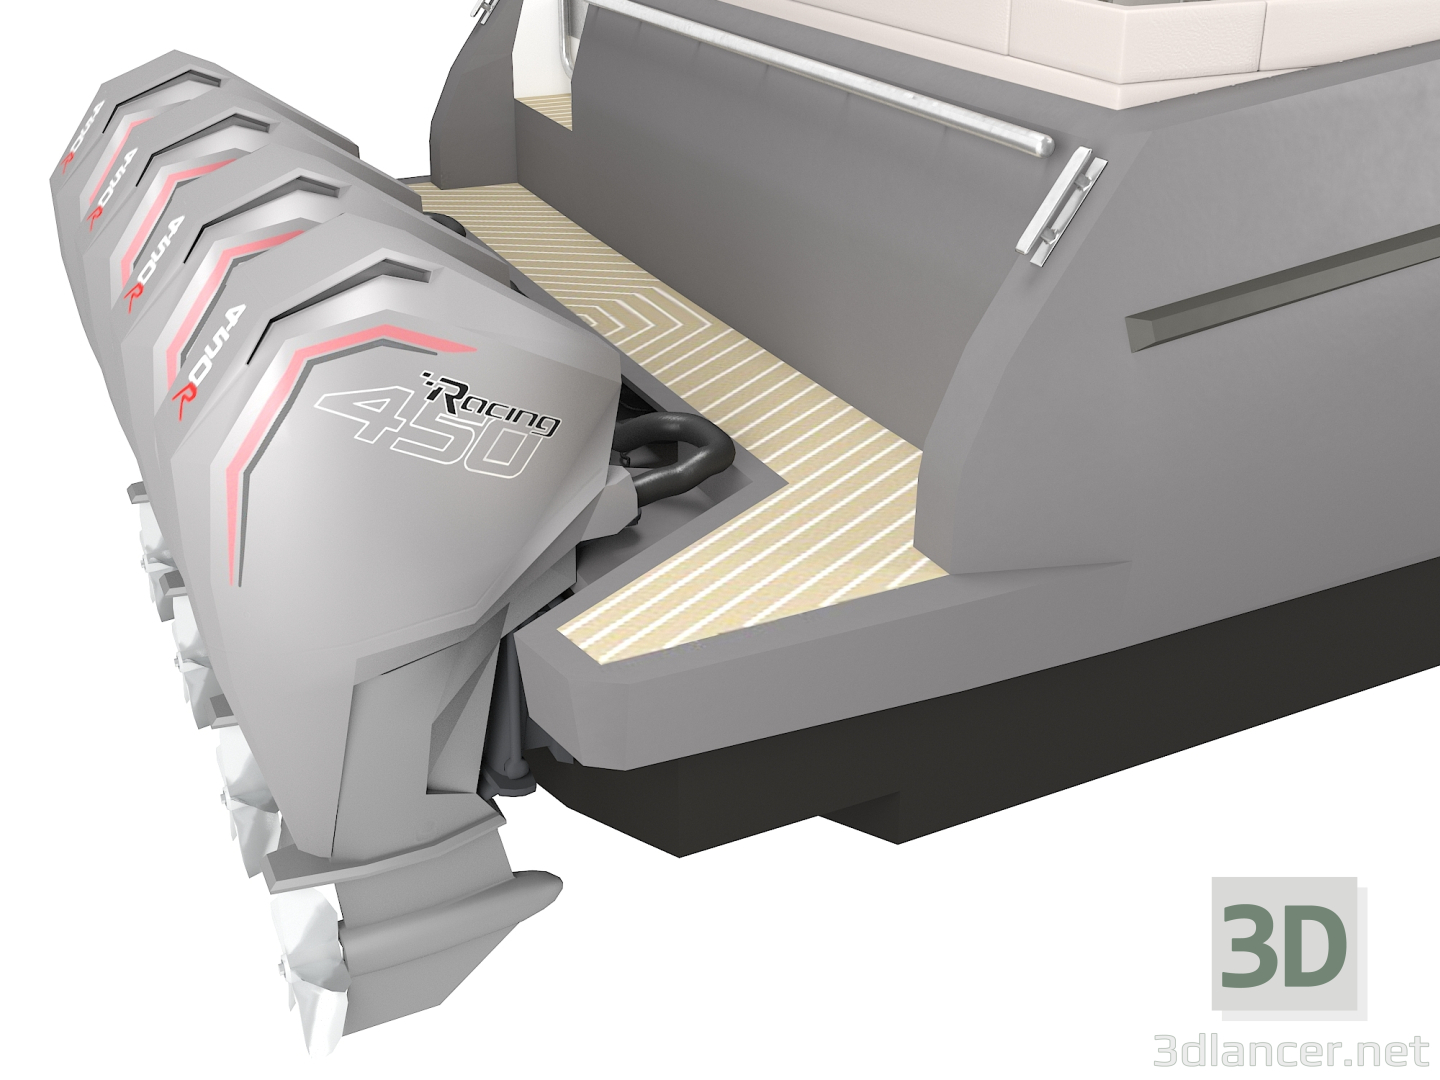 modèle 3D de Yacht à moteur Azimut Verve 47 acheter - rendu